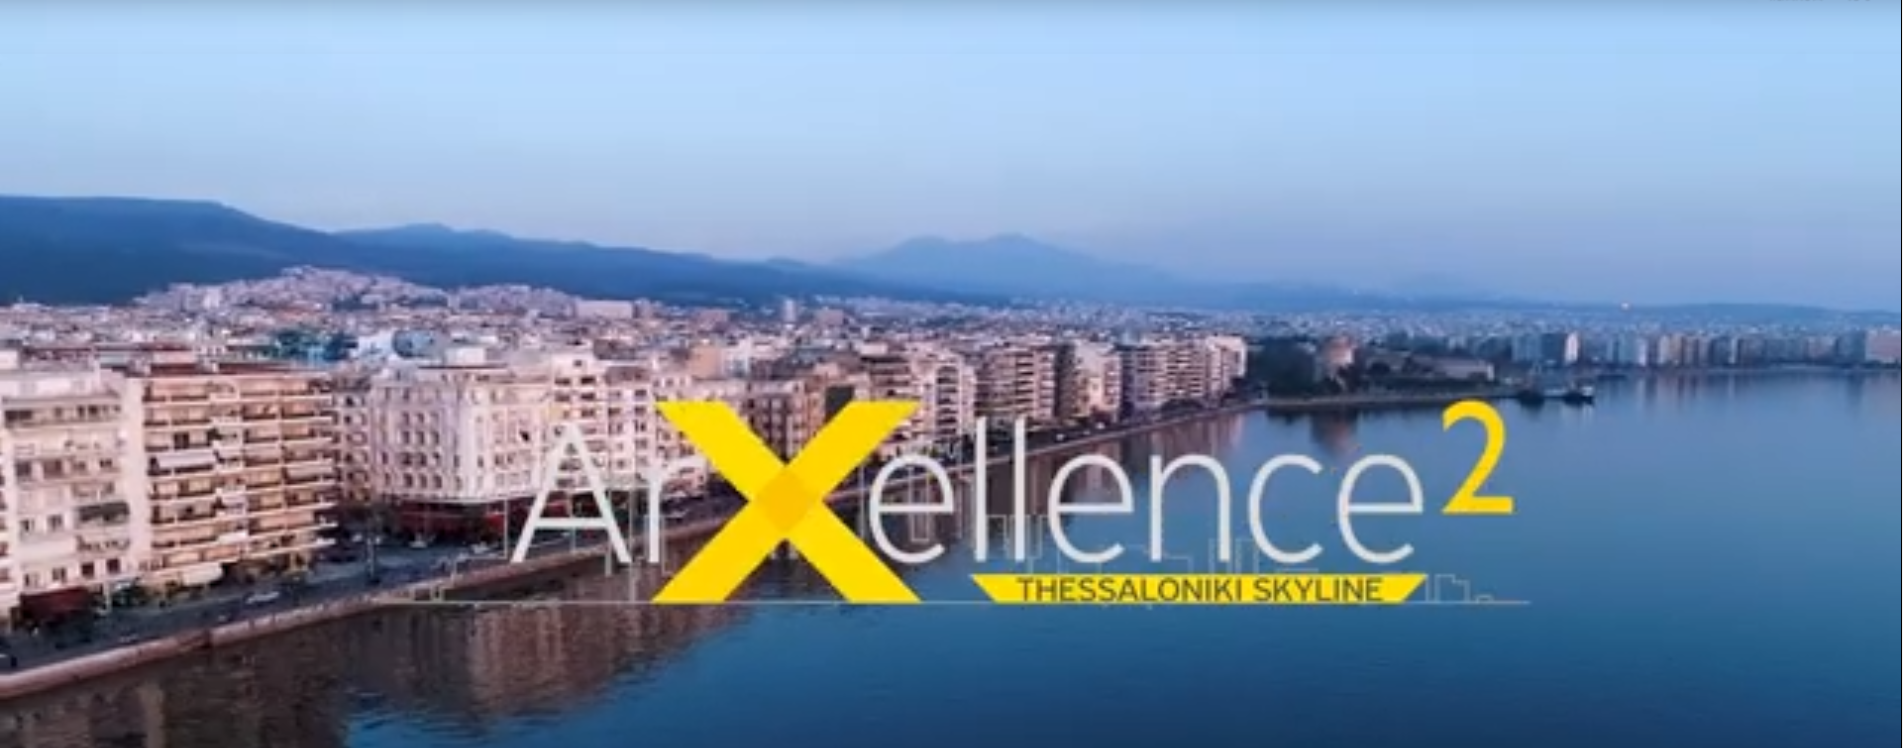 ArXellence2希腊塞萨洛尼基中央商务区概念设计竞赛